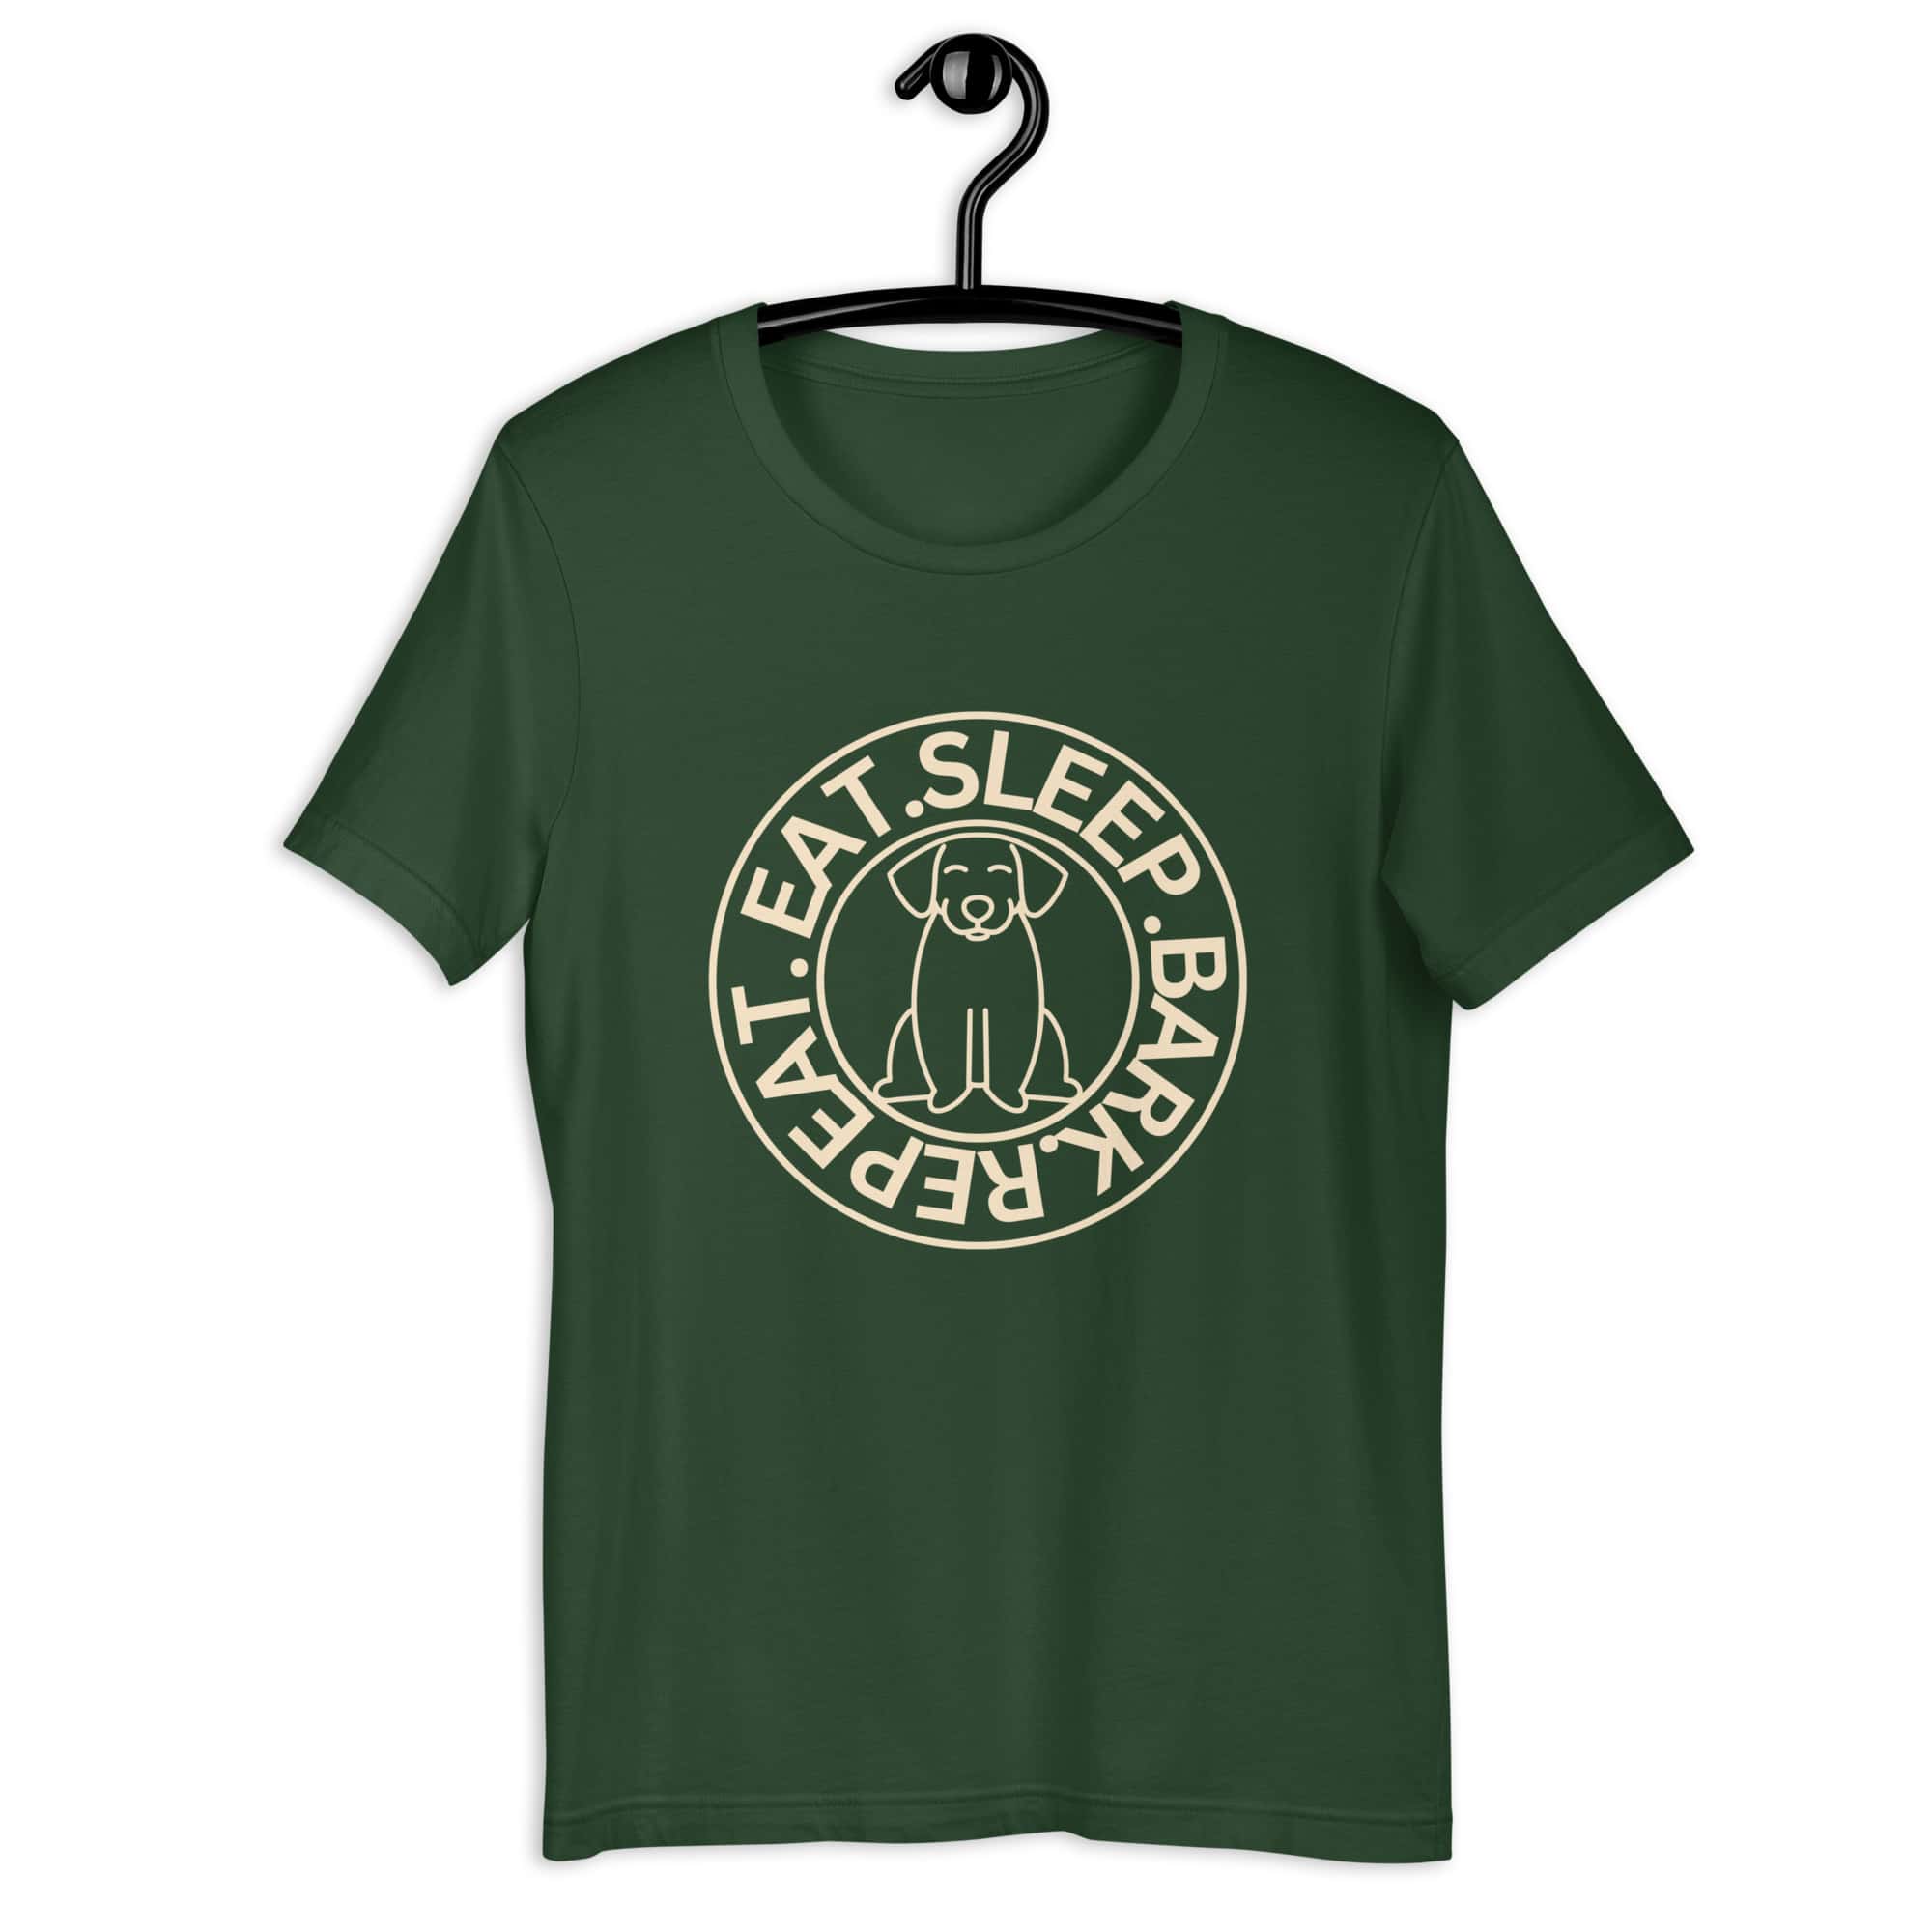 Eat Sleep Bark Repeat Ransylvanian Hound (Erdélyi Kopó) Unisex T-Shirt. Forest